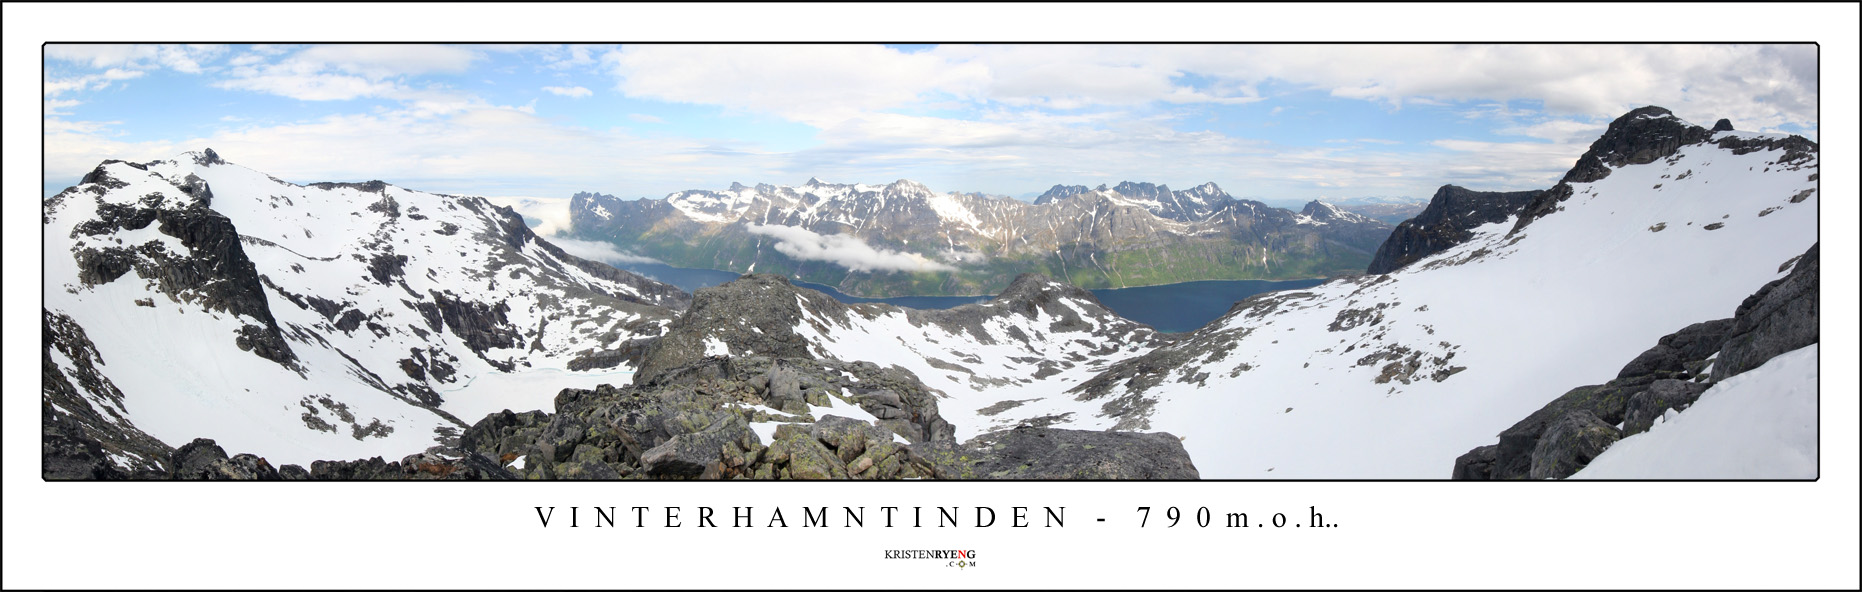 panoramavinterhamntinden1.jpg - Utsikt fra toppen av Vinterhamntinden (790 moh). Ersfjorden med den kjente Ersfjordtraversen ses midt i bakkant, midt i bildet.